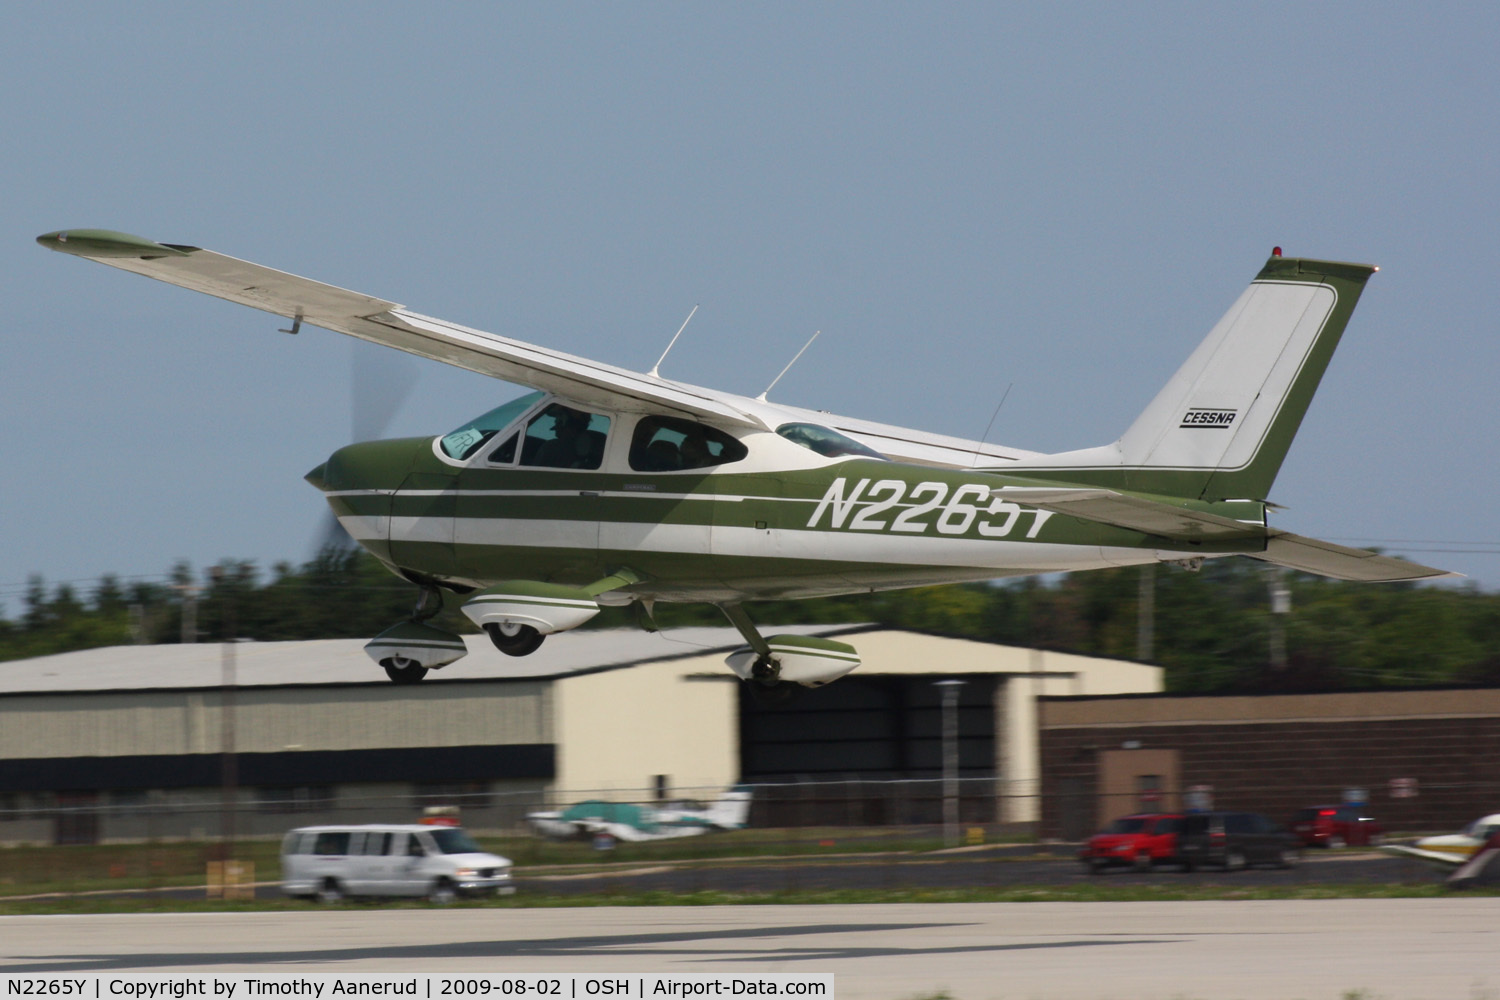 N2265Y, 1967 Cessna 177 Cardinal C/N 17700065, 1967 Cessna 177, c/n: 17700065